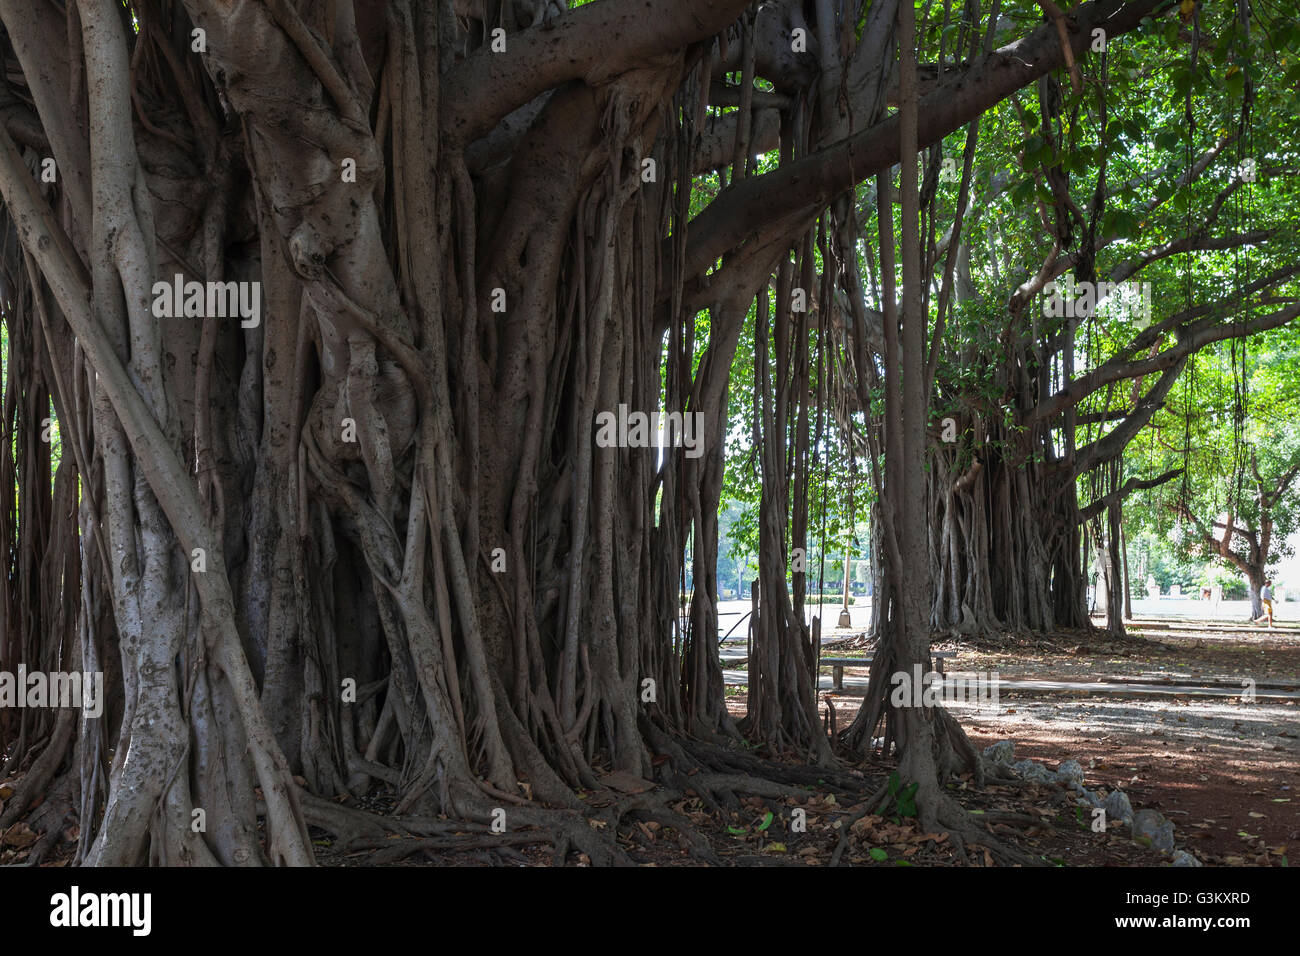 Indian banyan tree (Ficus benghalensis) radici, Havana, Cuba Foto Stock